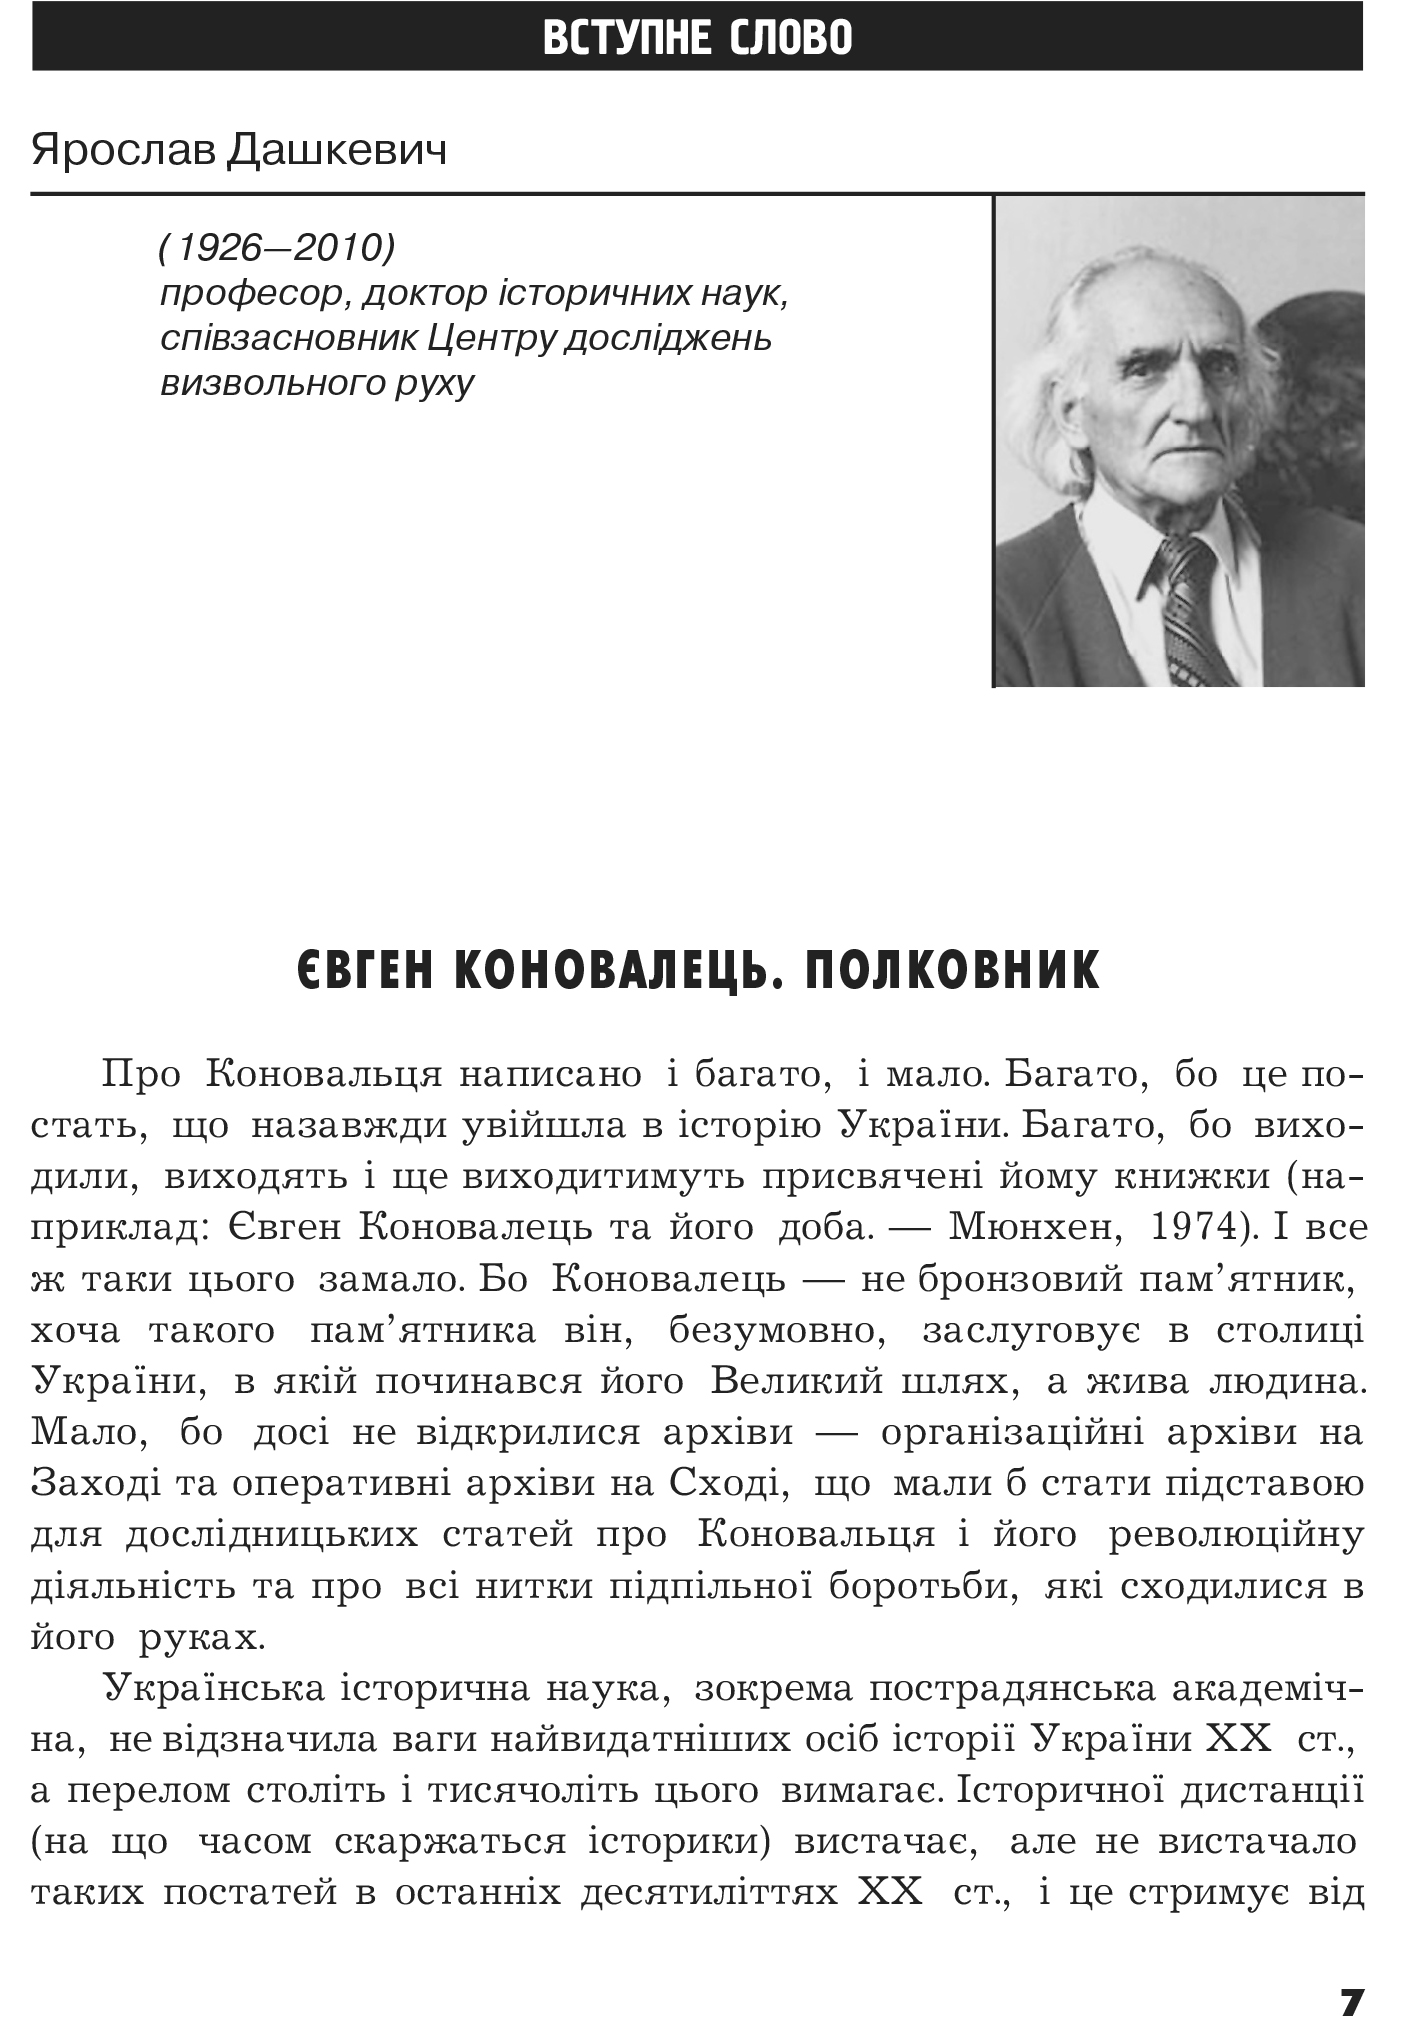 Український визвольний рух №16, ст. 7 - 13